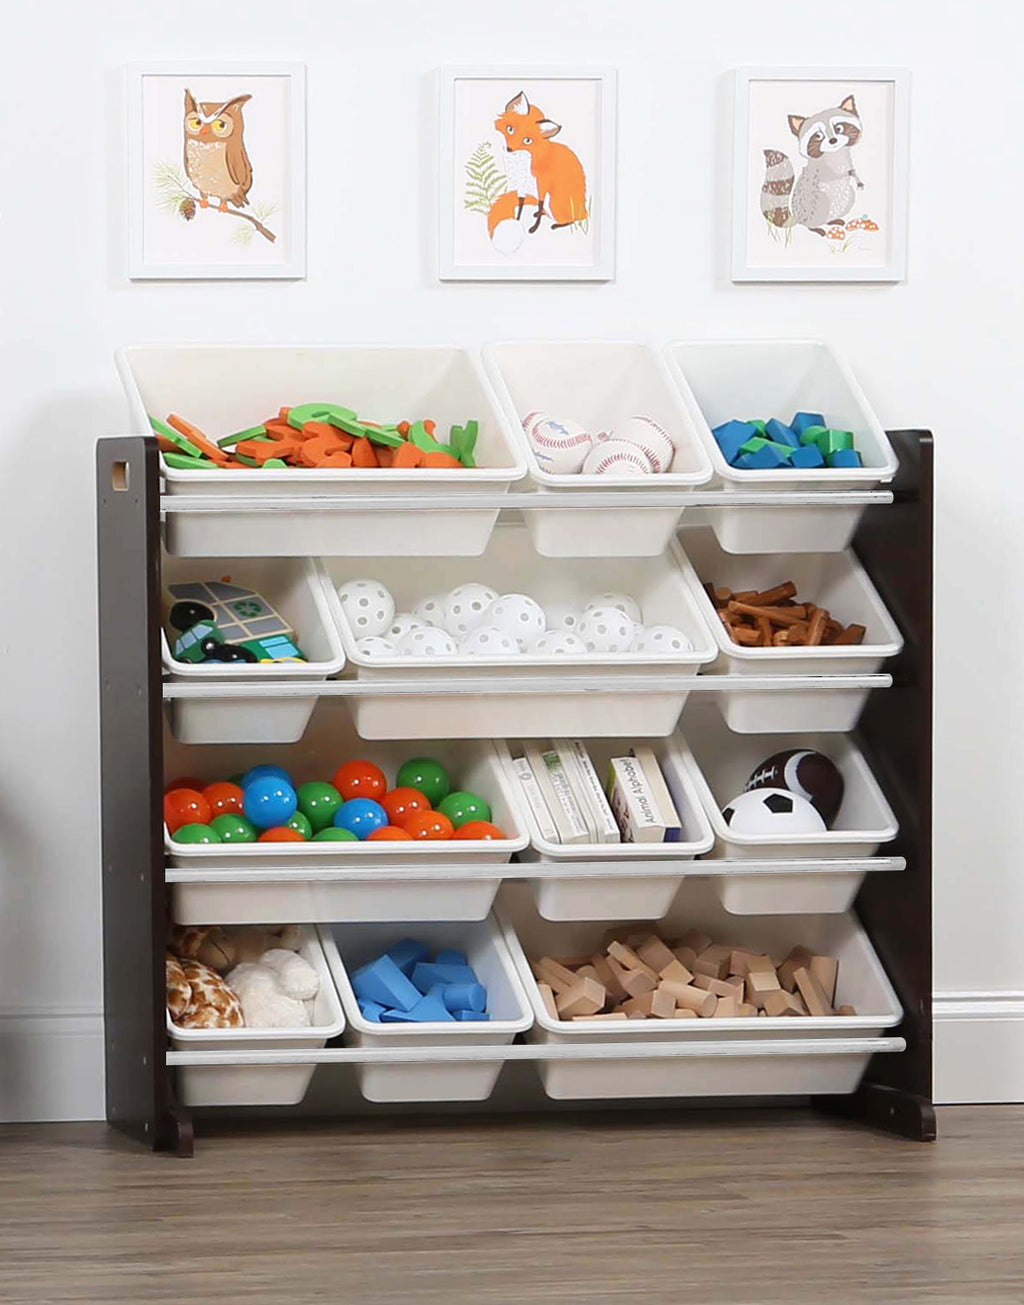 Kids Toy Storage Organizer with 12 Plastic Bins